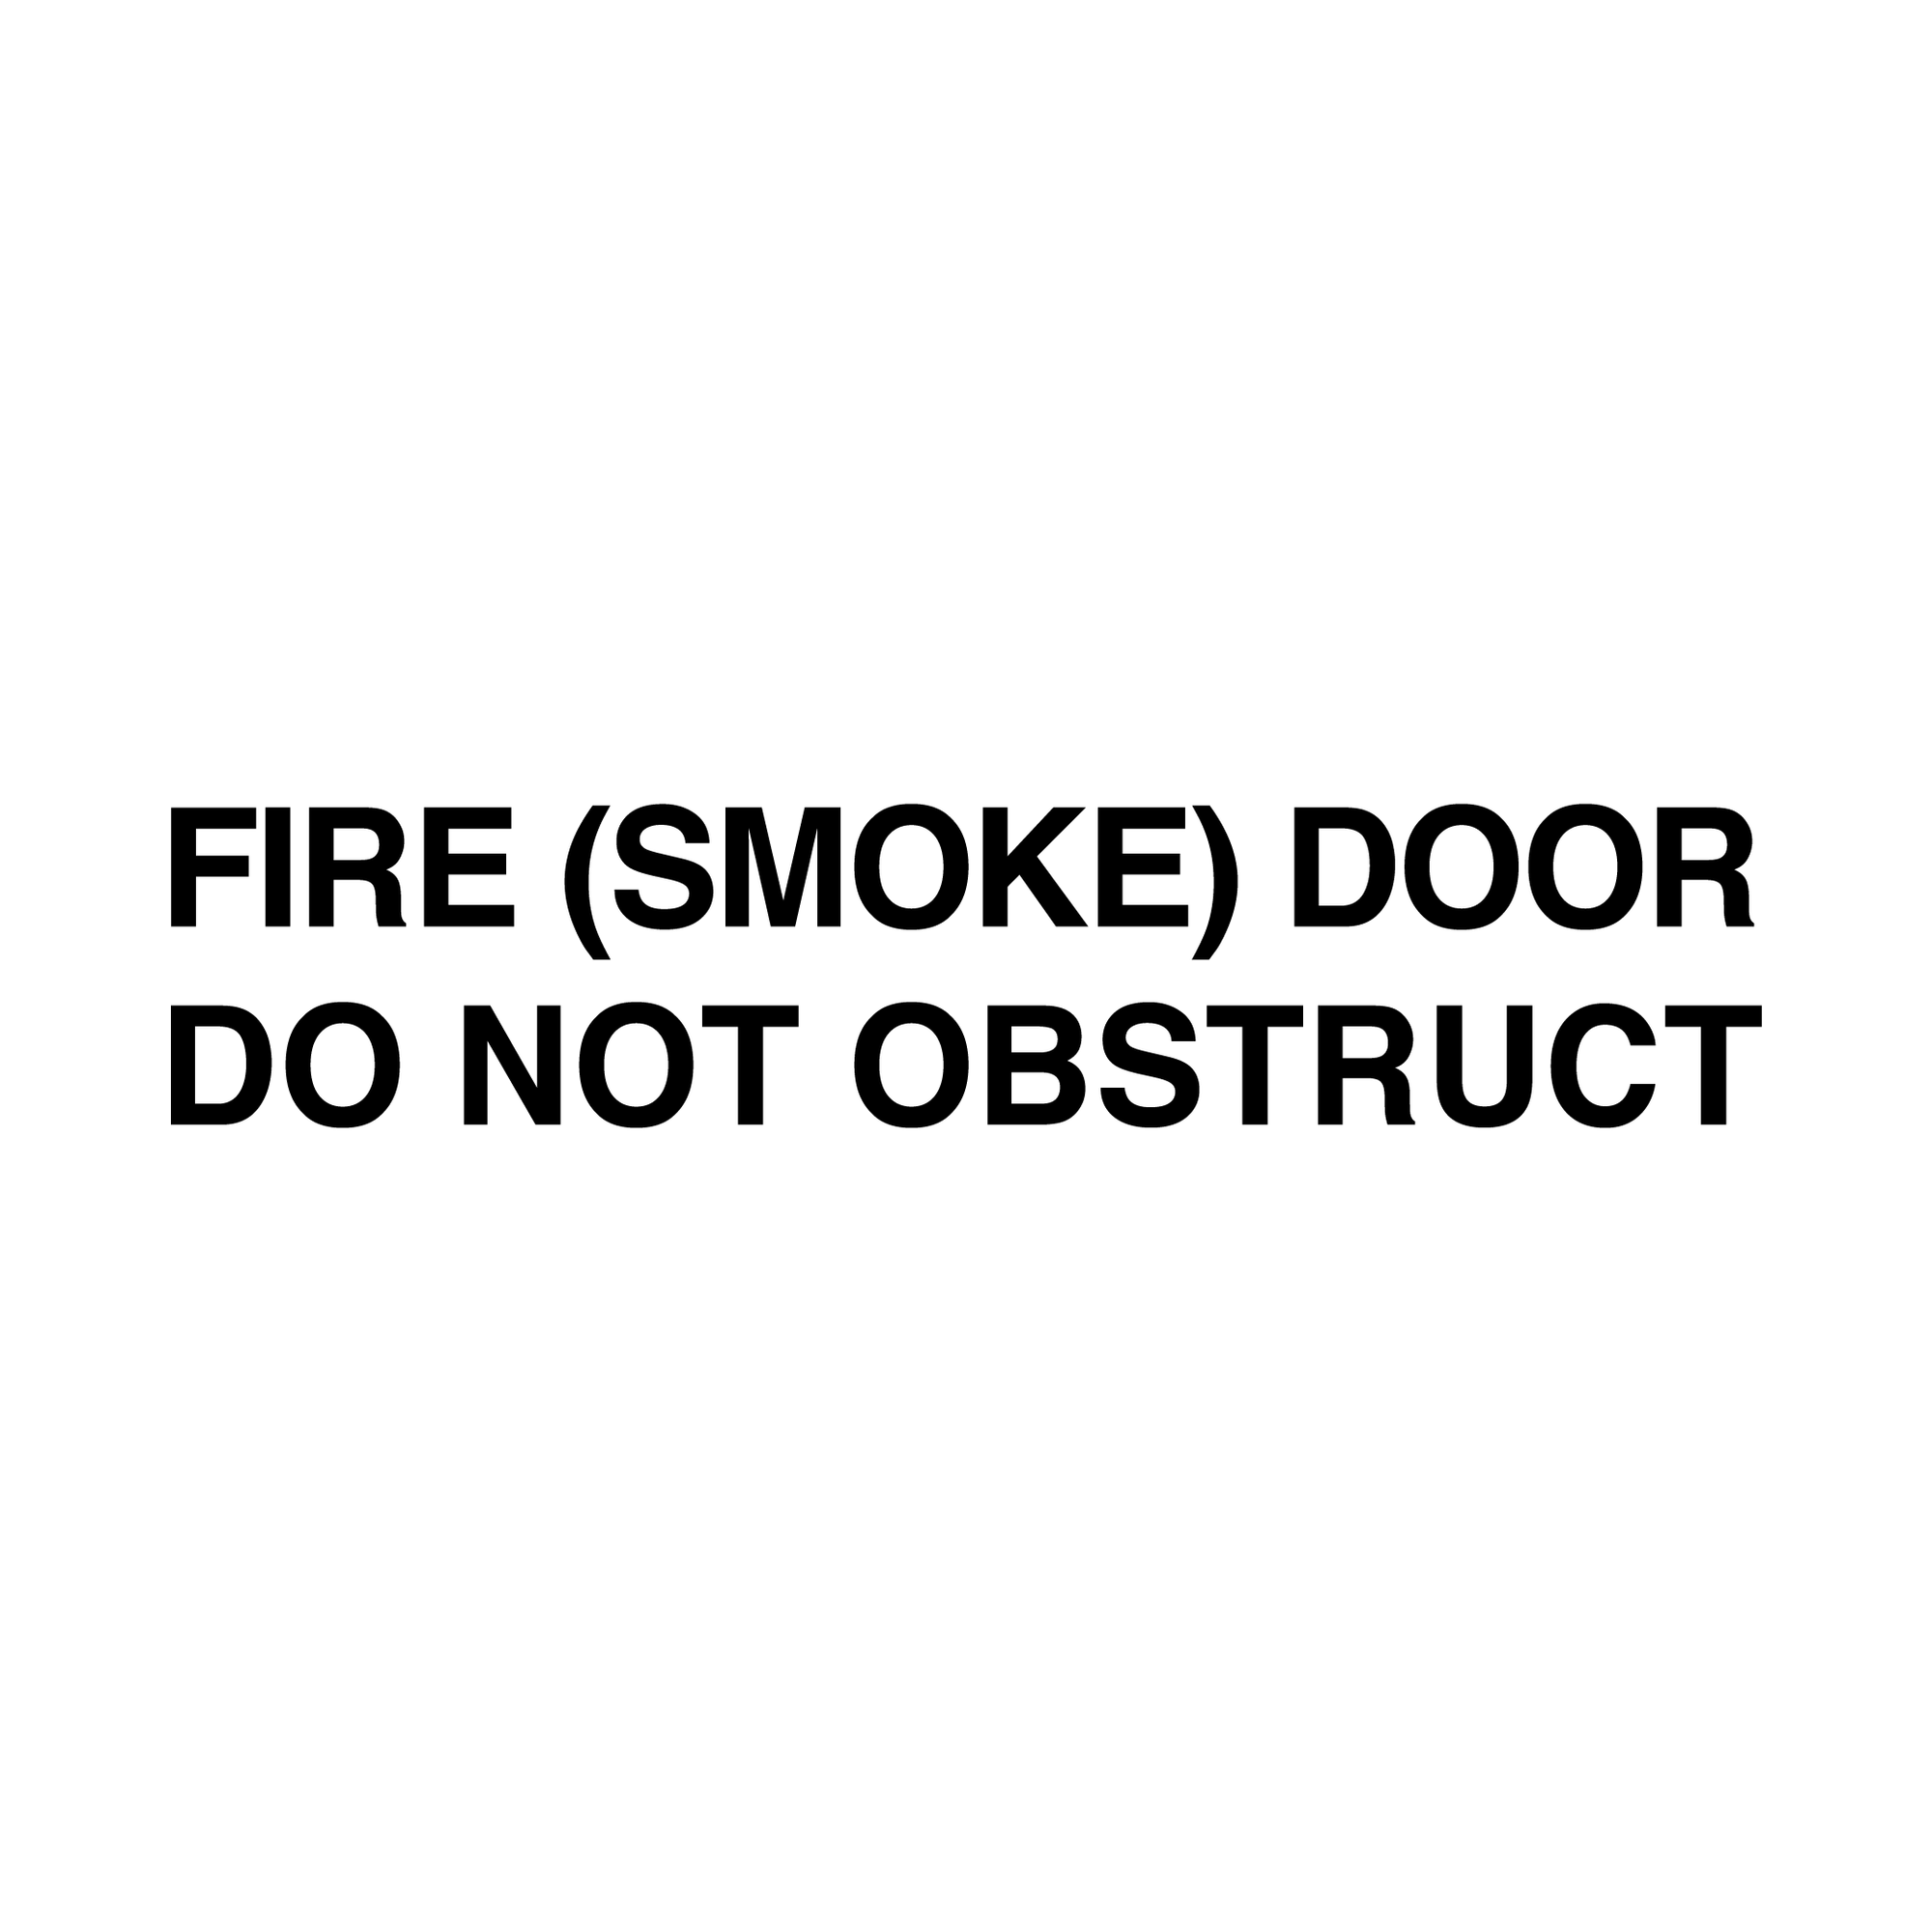 Fire Door Stickers - FIRE (SMOKE) DOOR, DO NOT OBSTUCT